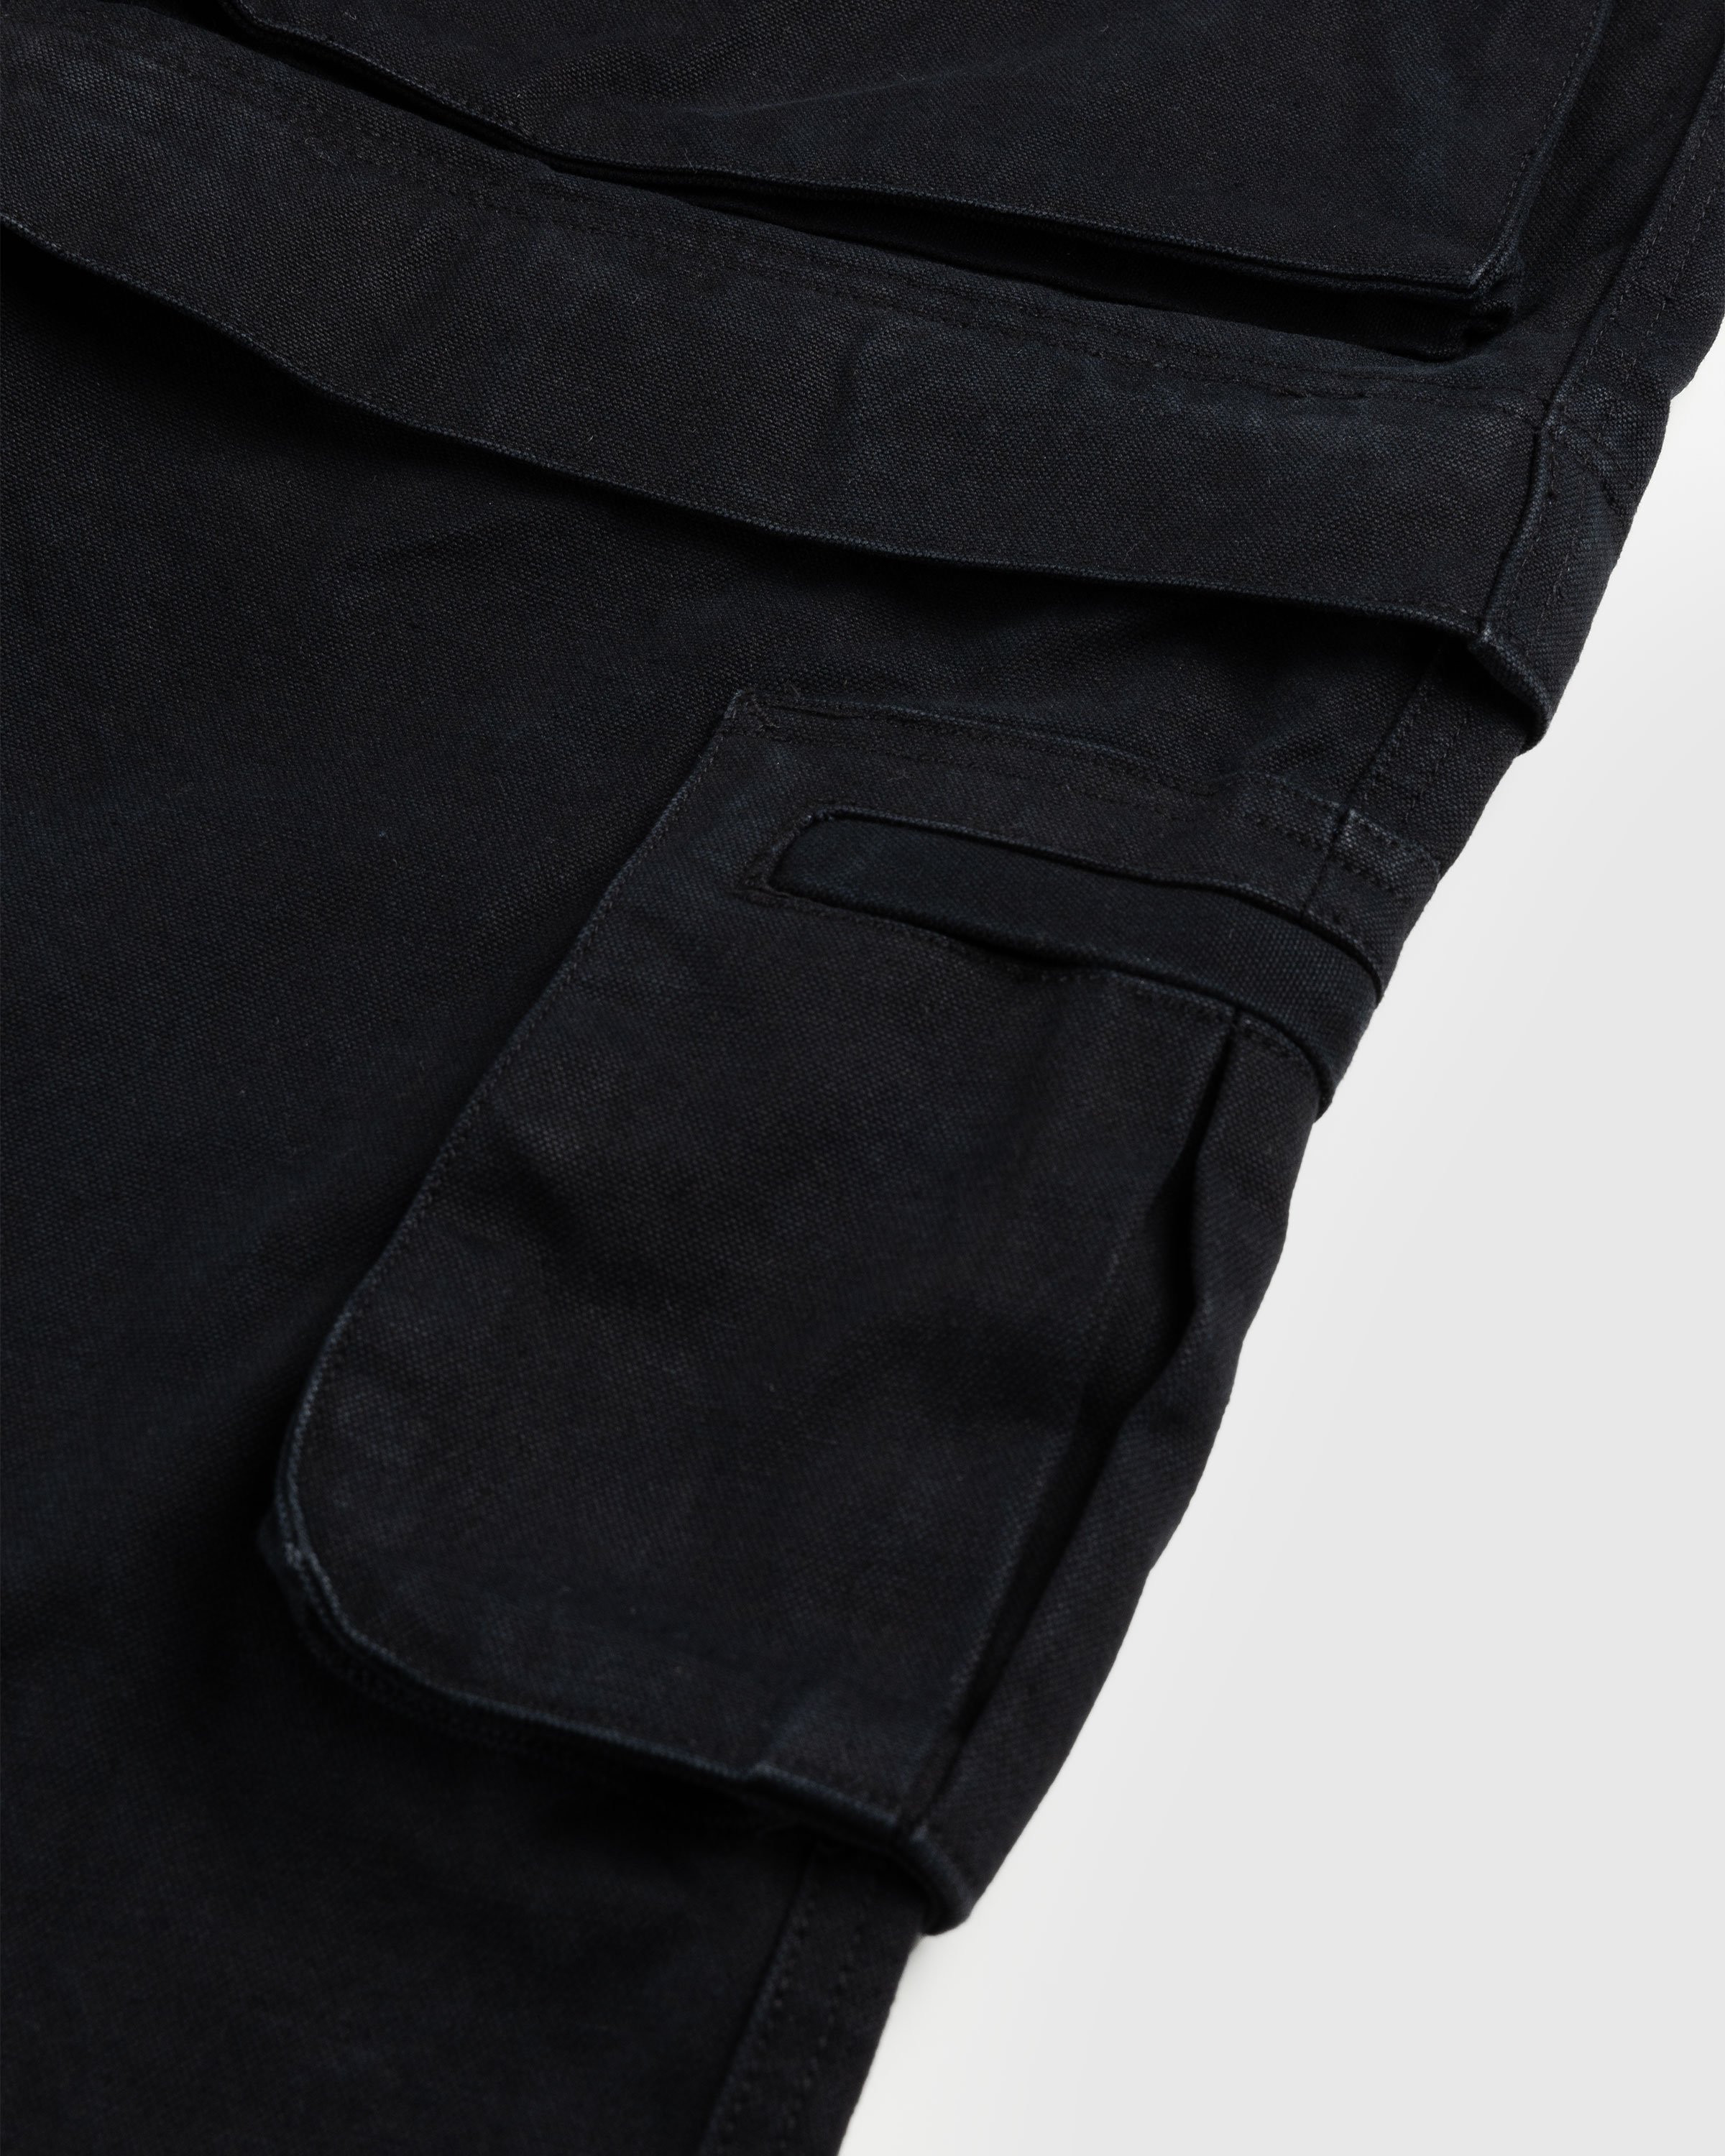 Entire Studios - Hard Cargo Black - Clothing - Black - Image 6